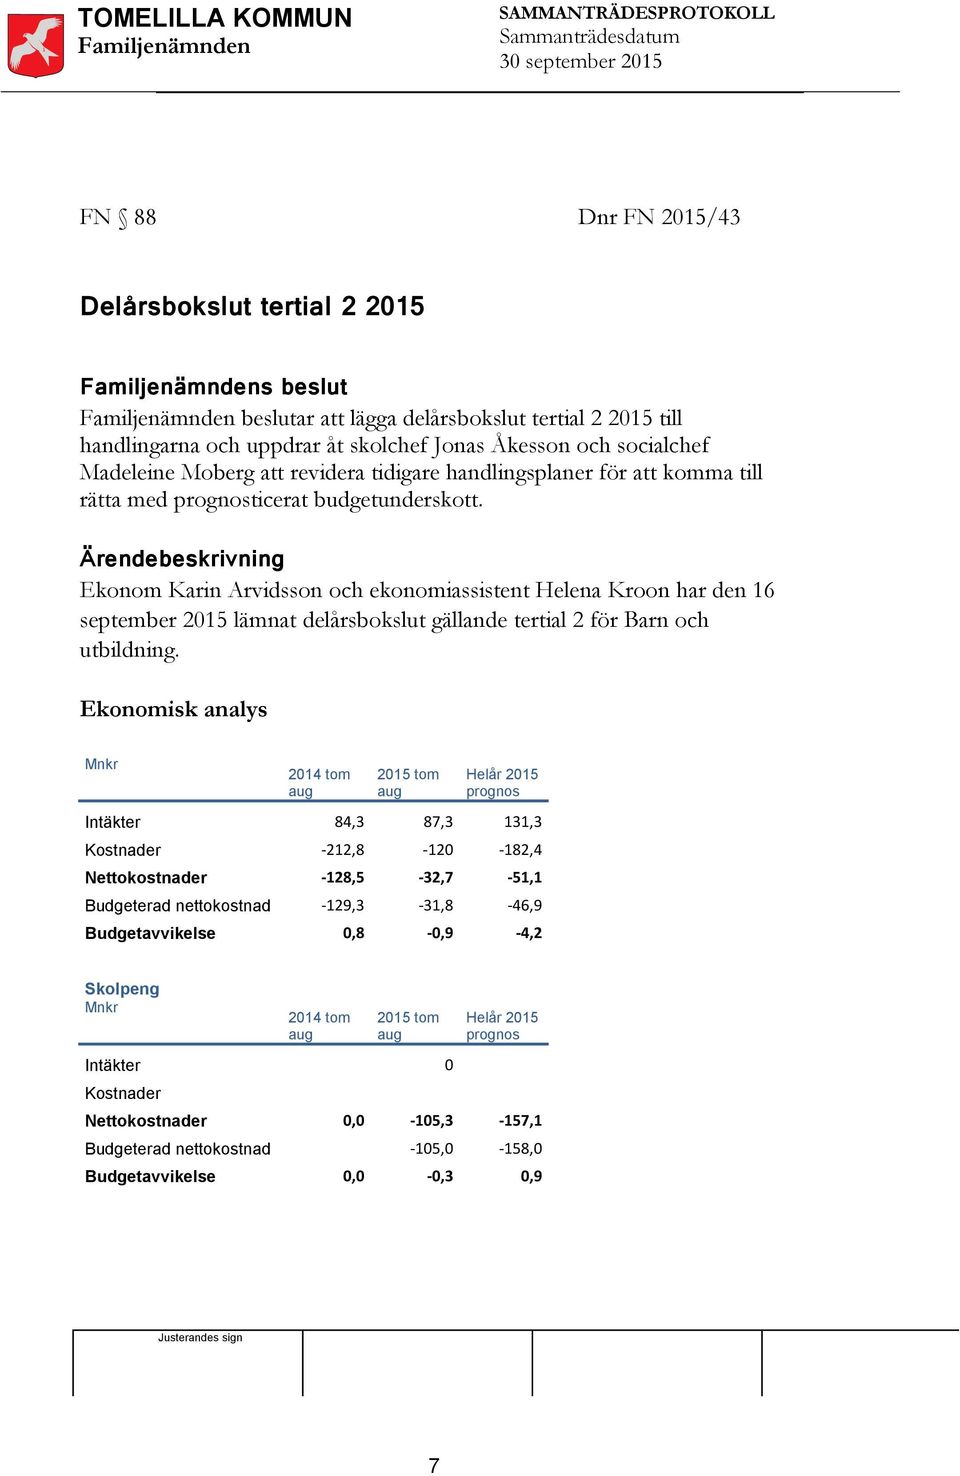 Ärendebeskrivning Ekonom Karin Arvidsson och ekonomiassistent Helena Kroon har den 16 september 2015 lämnat delårsbokslut gällande tertial 2 för Barn och utbildning.